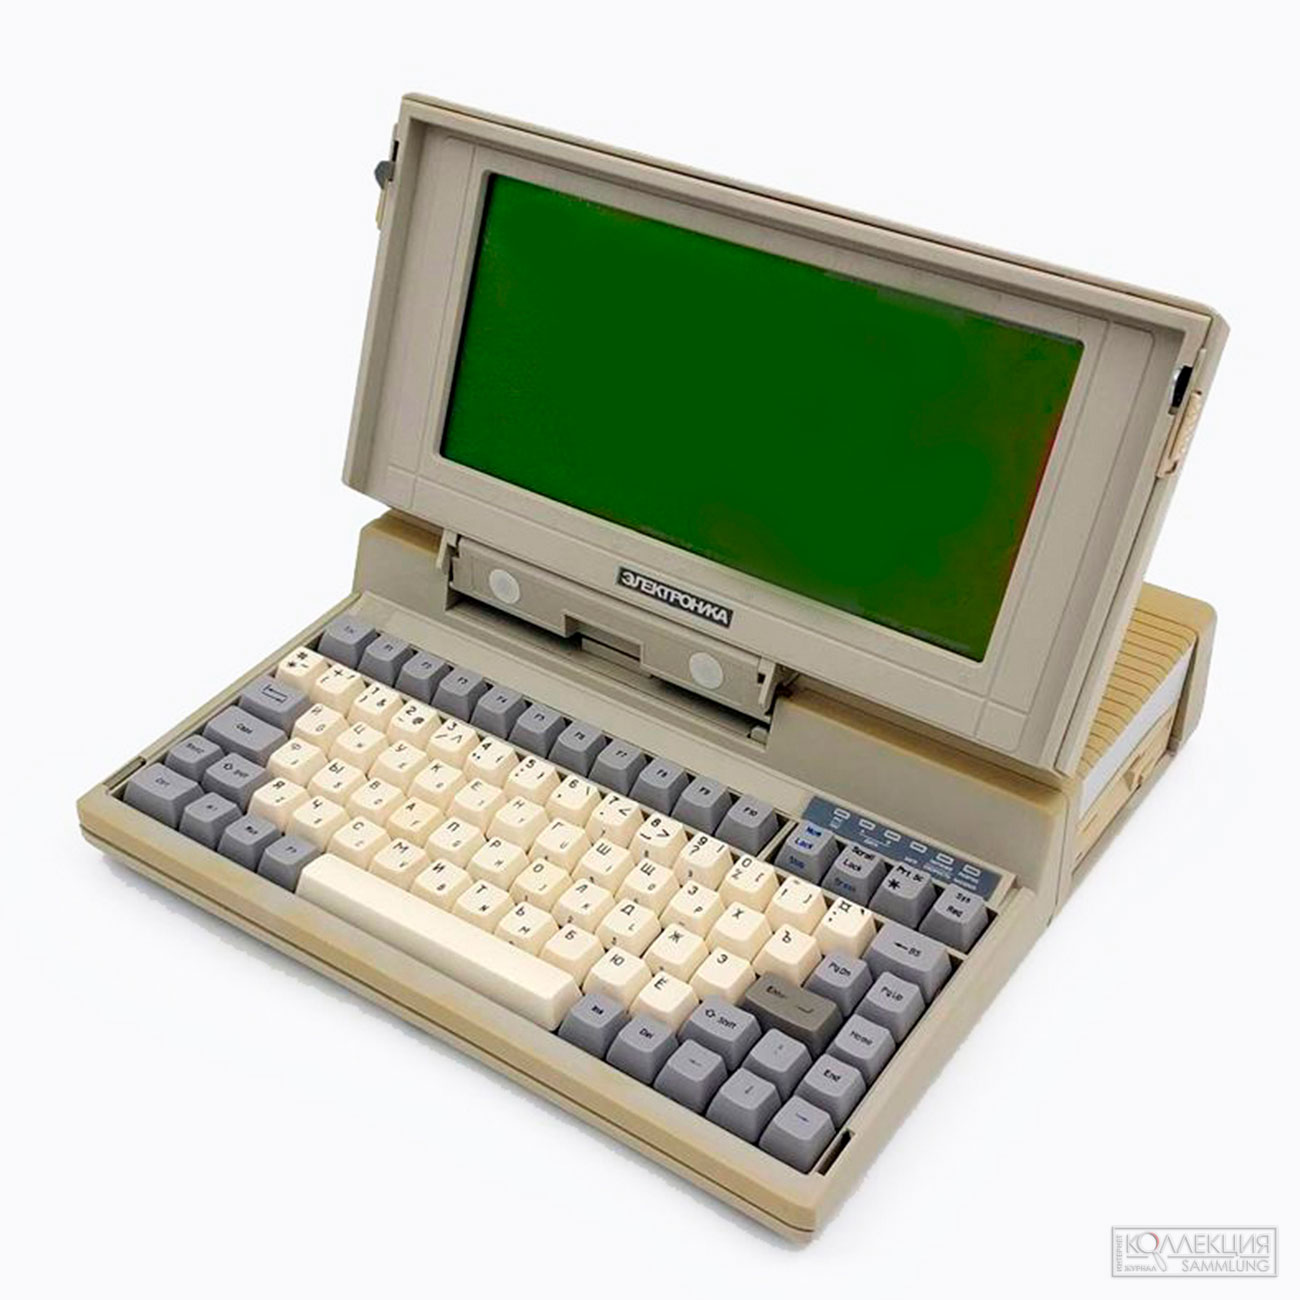 Первый советский ноутбук Электроника MC1504, 1991 год, экспонат предоставлен проектом retro-computer.ru